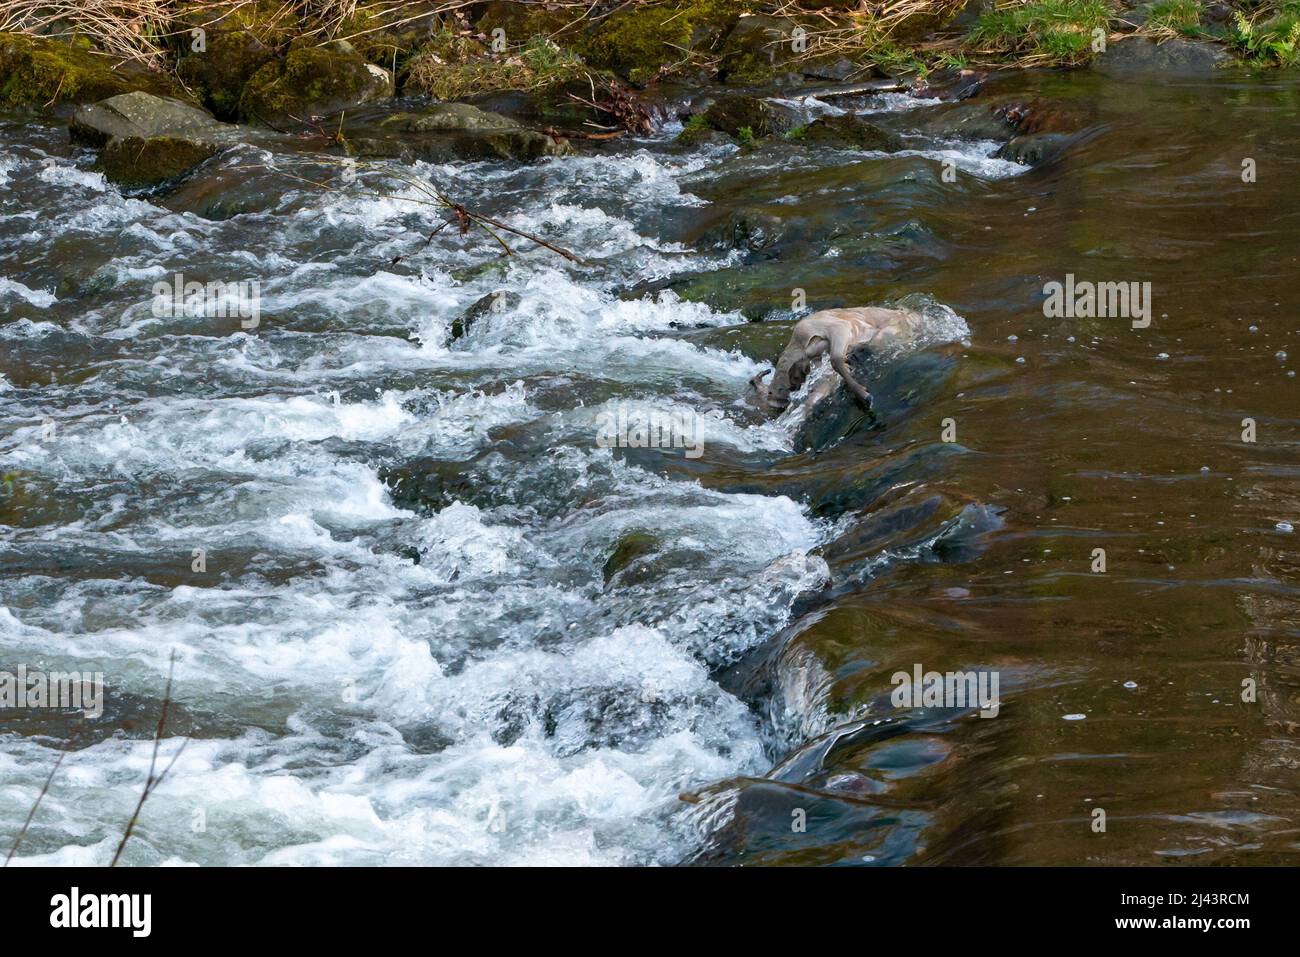 Der Leichnam einer kleinen Rehe ertrank in einem wilden Fluss. Totes Tier, das auf Steinen im fließenden Wasser liegt. Beim Überqueren eines Flusses getötete Tiere. Stockfoto